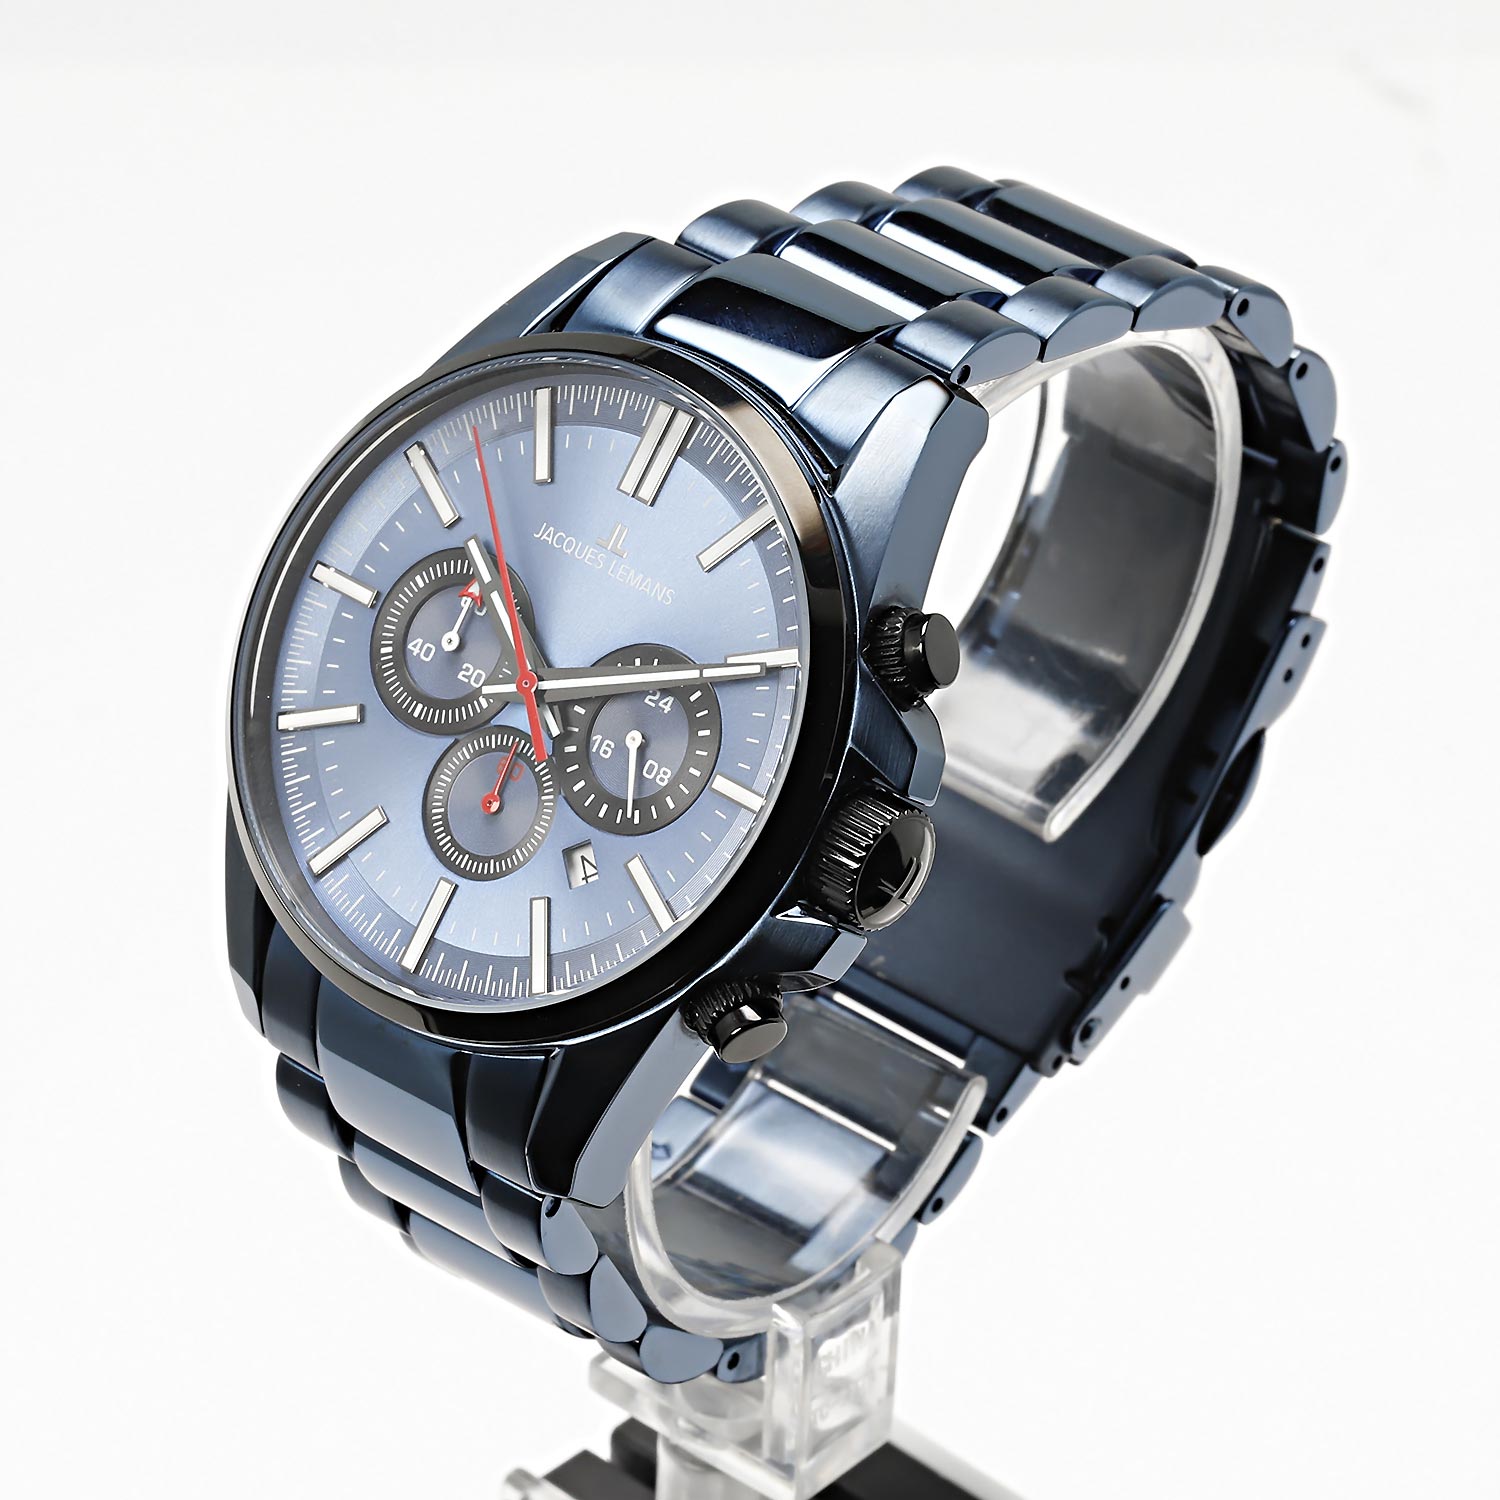 Наручные часы Jacques Lemans 1-2119G интернет-магазине — в цене, описание купить характеристики, AllTime.ru инструкция, лучшей фото, по